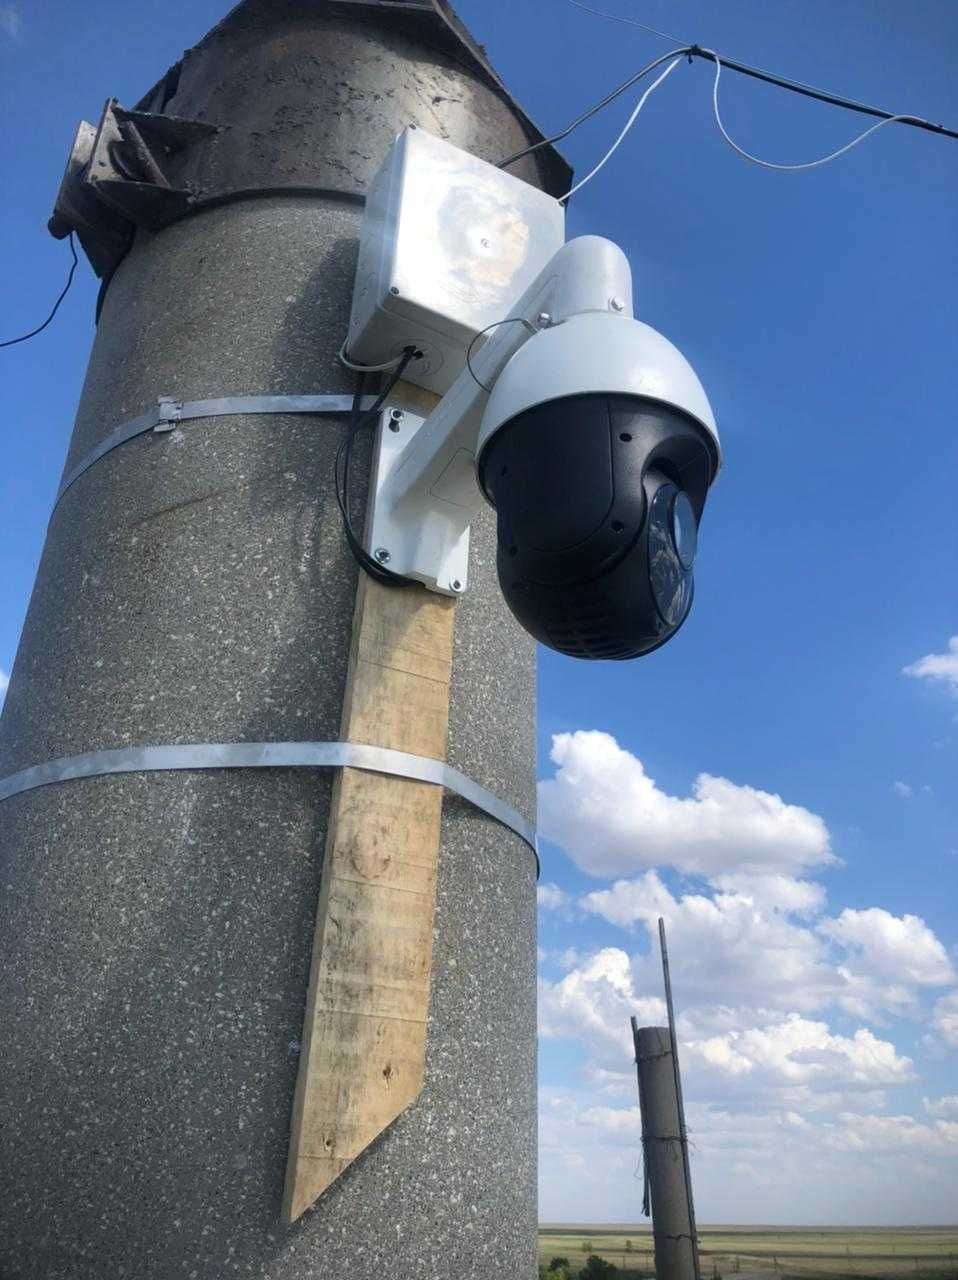 Уличные камеры - установка систем видеонаблюдения ПОД КЛЮЧ